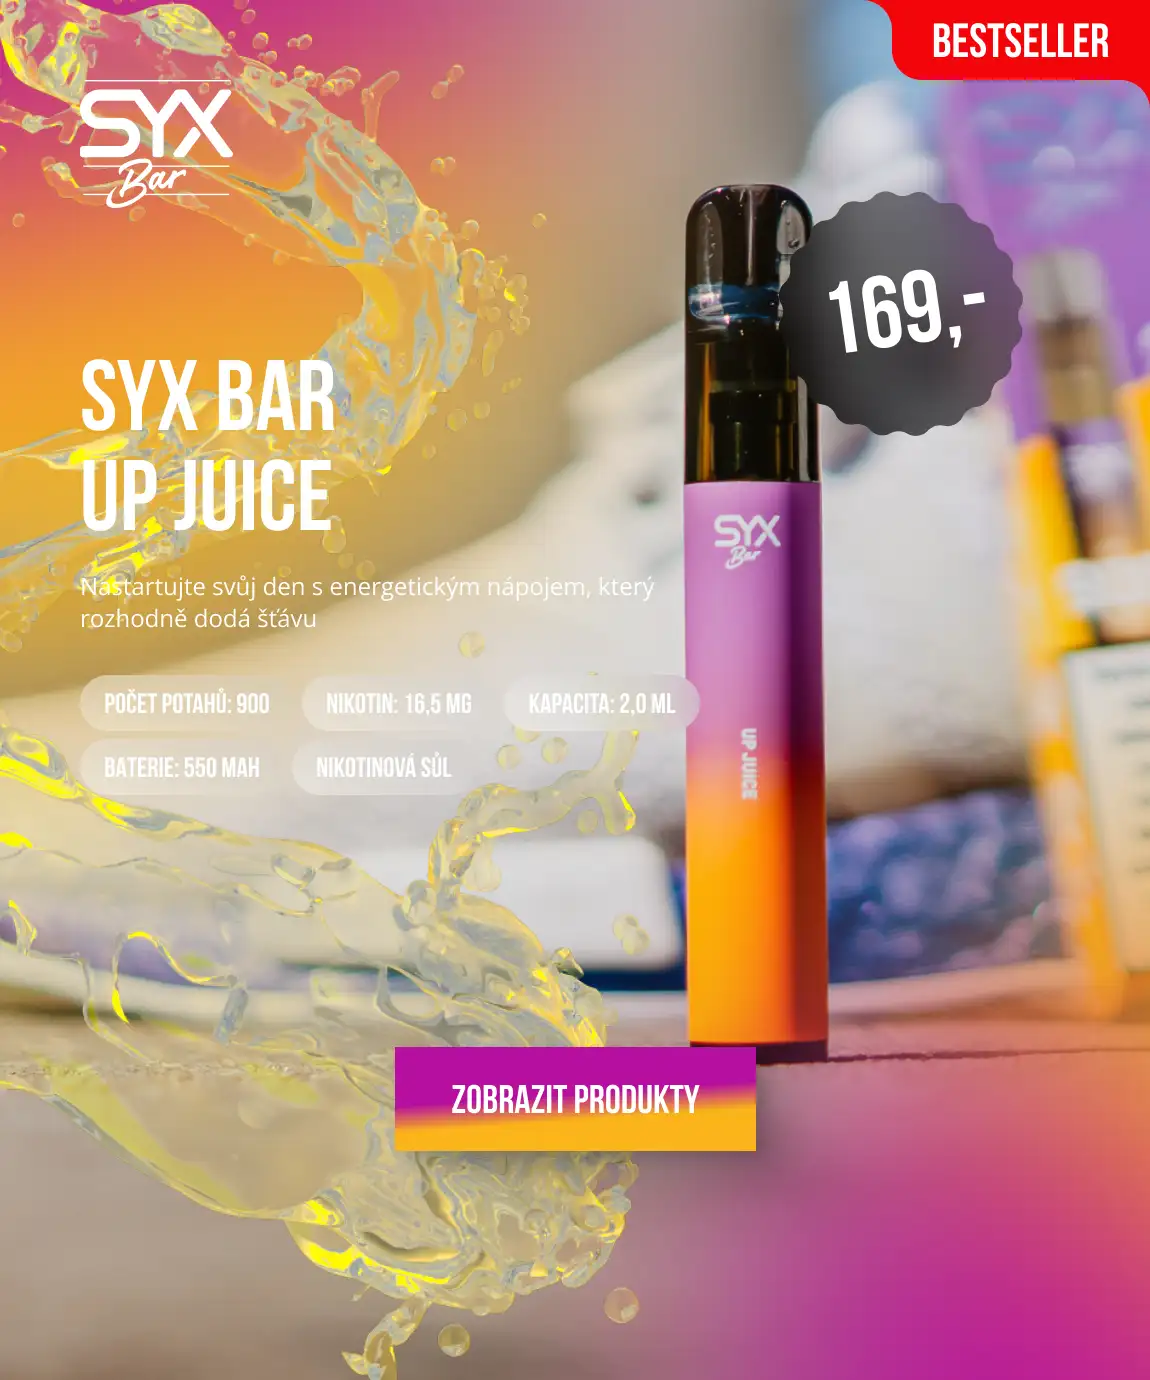 SYX BAR UP JUICE: Nastartujte svůj den s energetickým nápojem, který rozhodně dodá šťávu